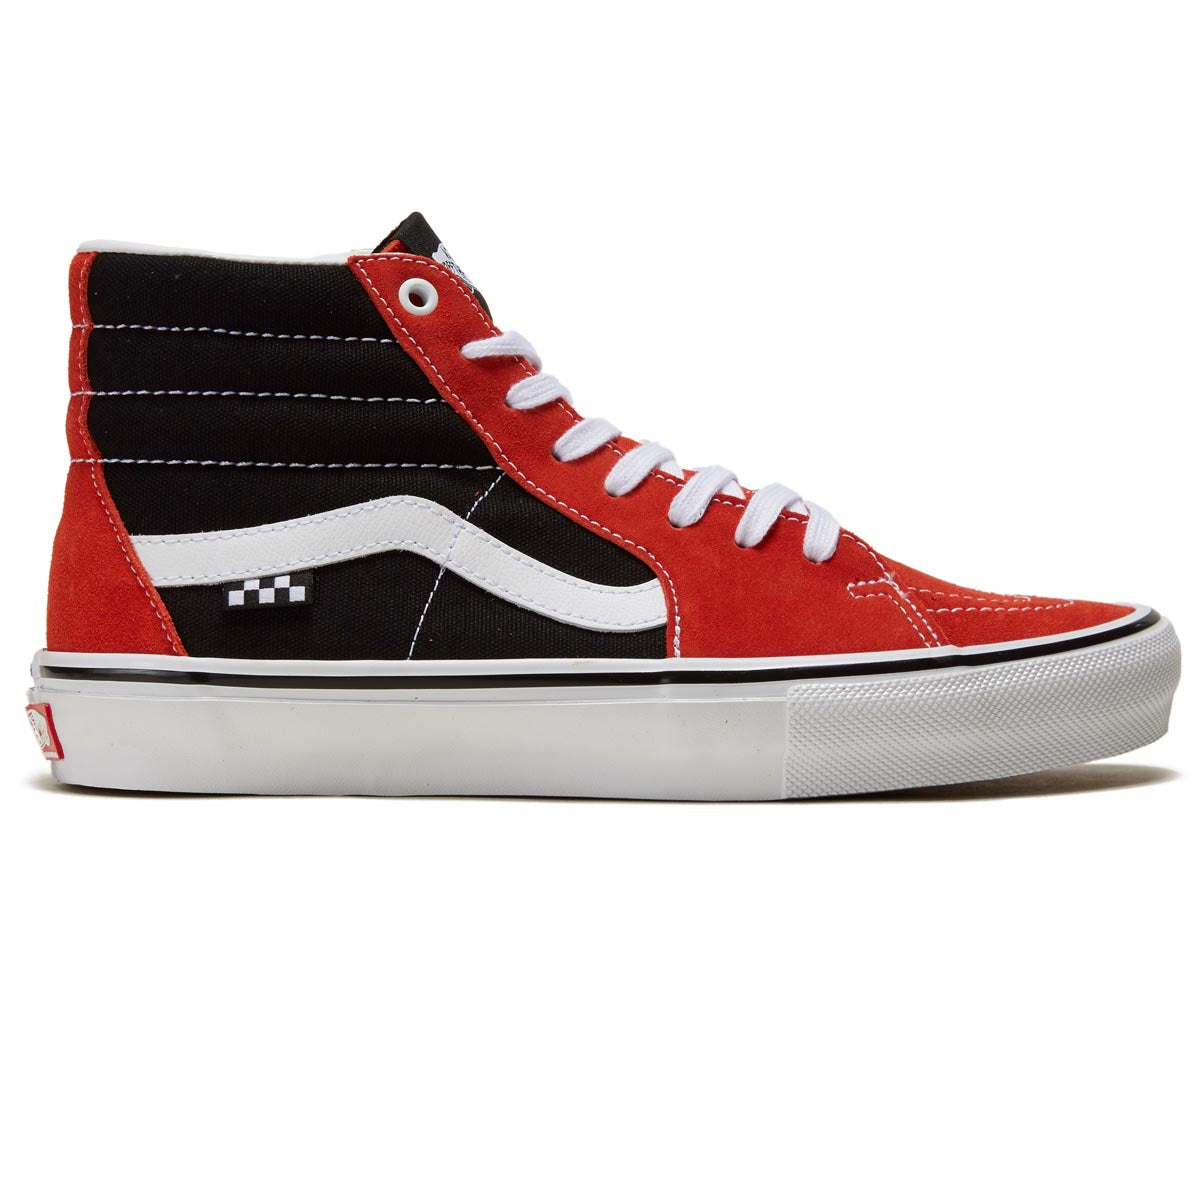 Vans Skate Sk8-Hi Shoes - Red/Black image 1